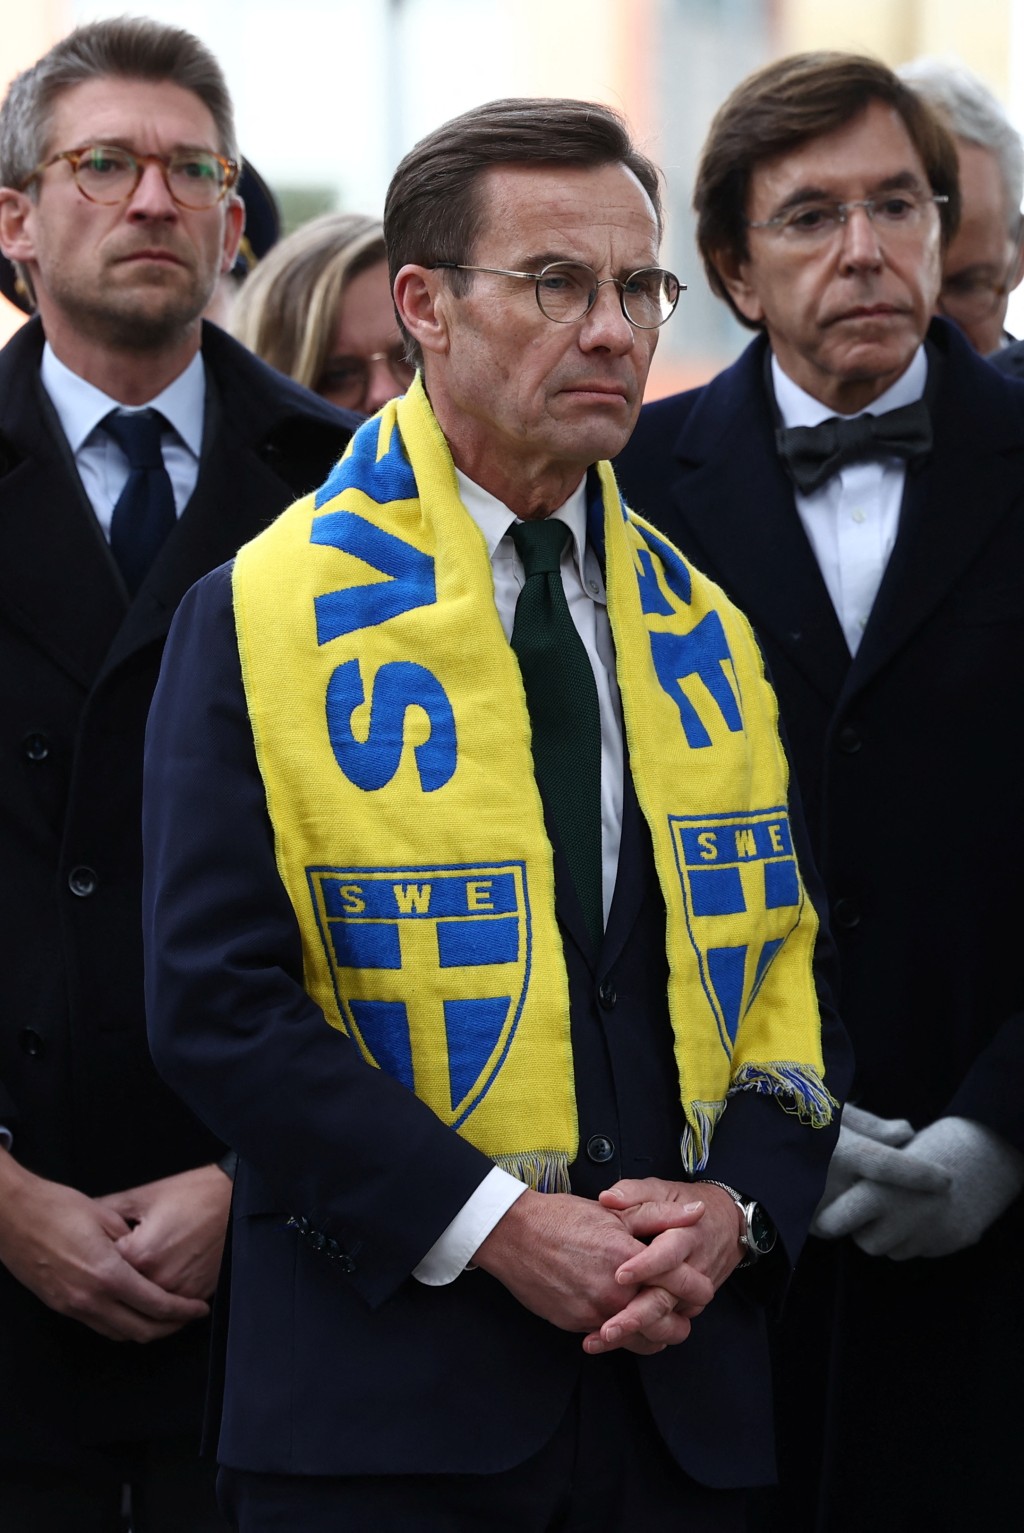 瑞典總理基斯達夫臣出席悼念活動。路透社